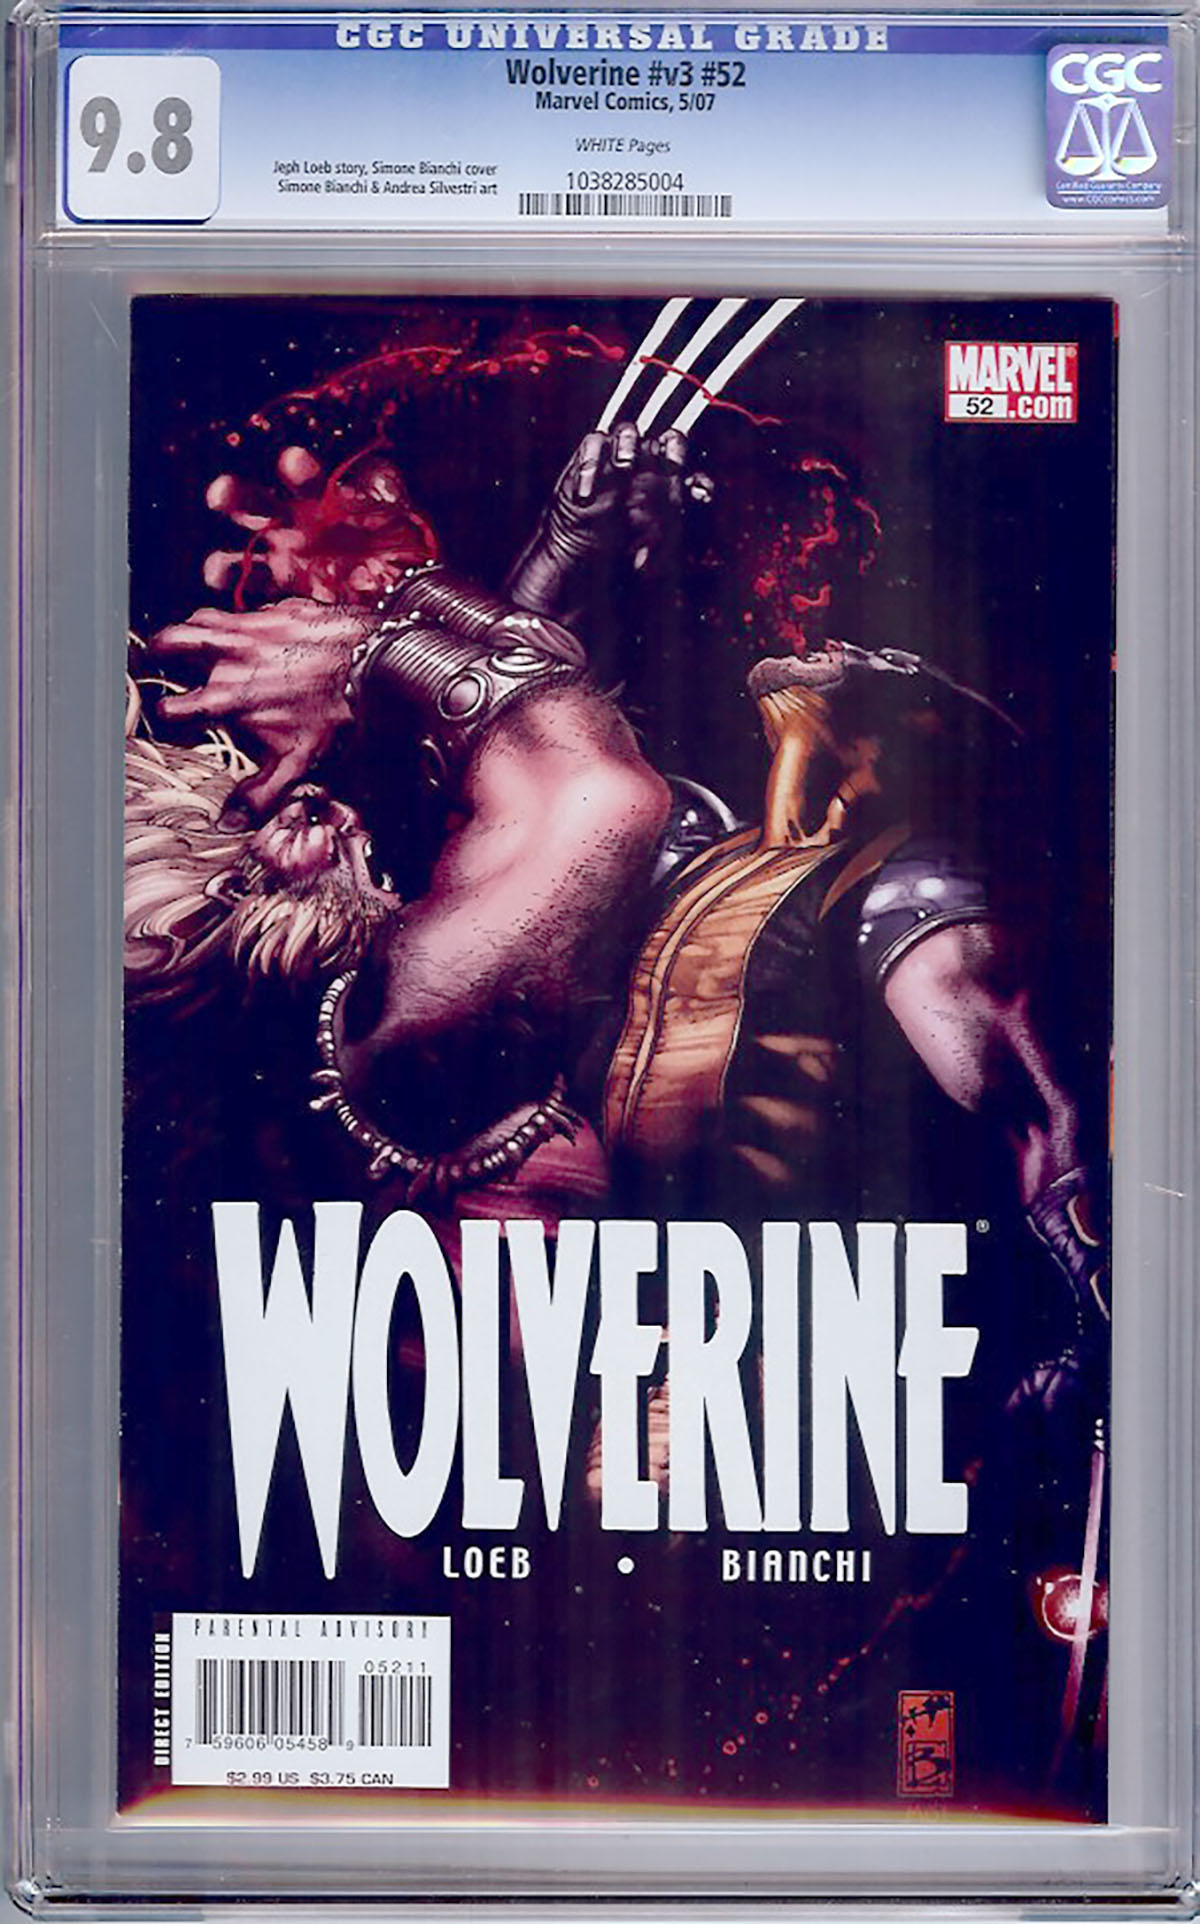 Wolverine Vol 3 #52 CGC 9.8 w